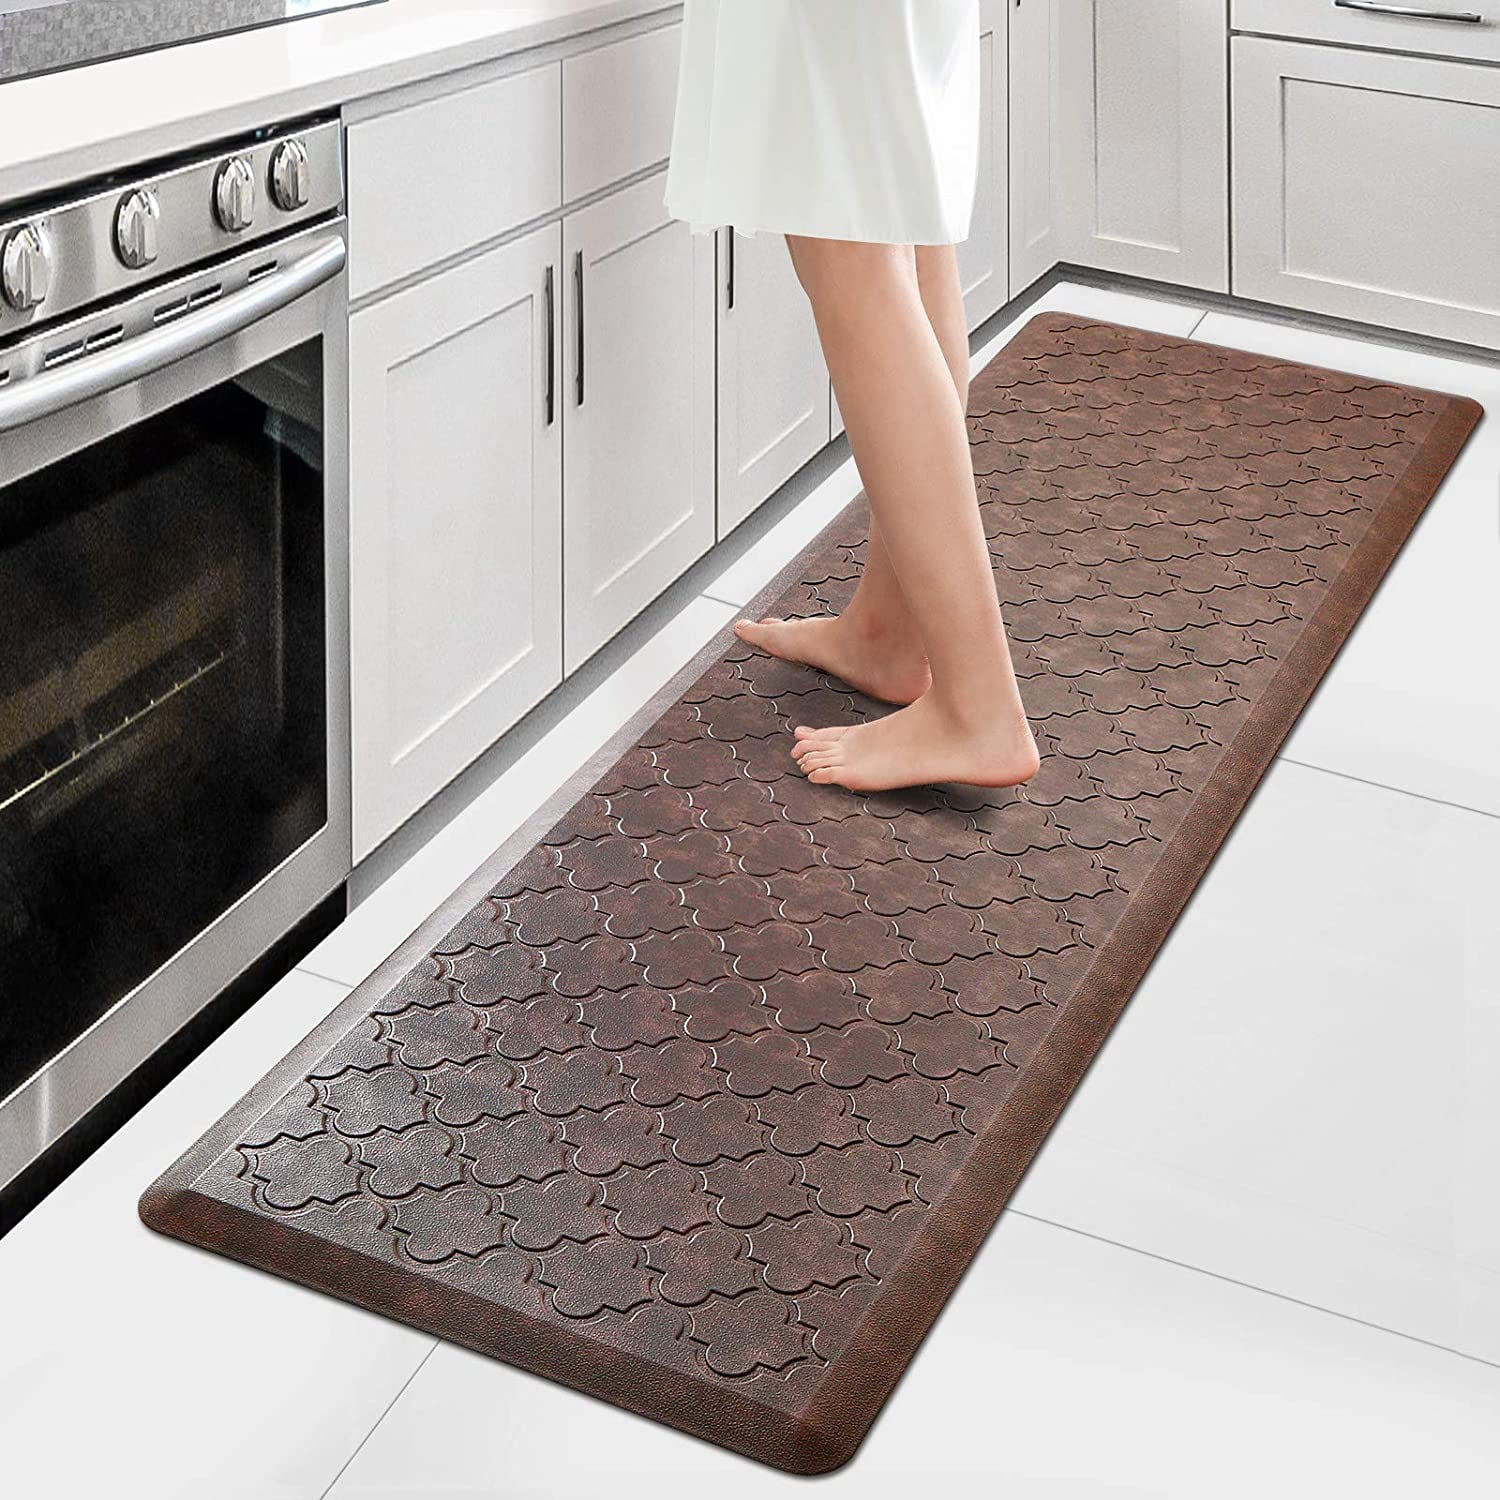 PVC Shower Mat Waterproof Doormat Doormat Kitchen Rug with Draining Holes 